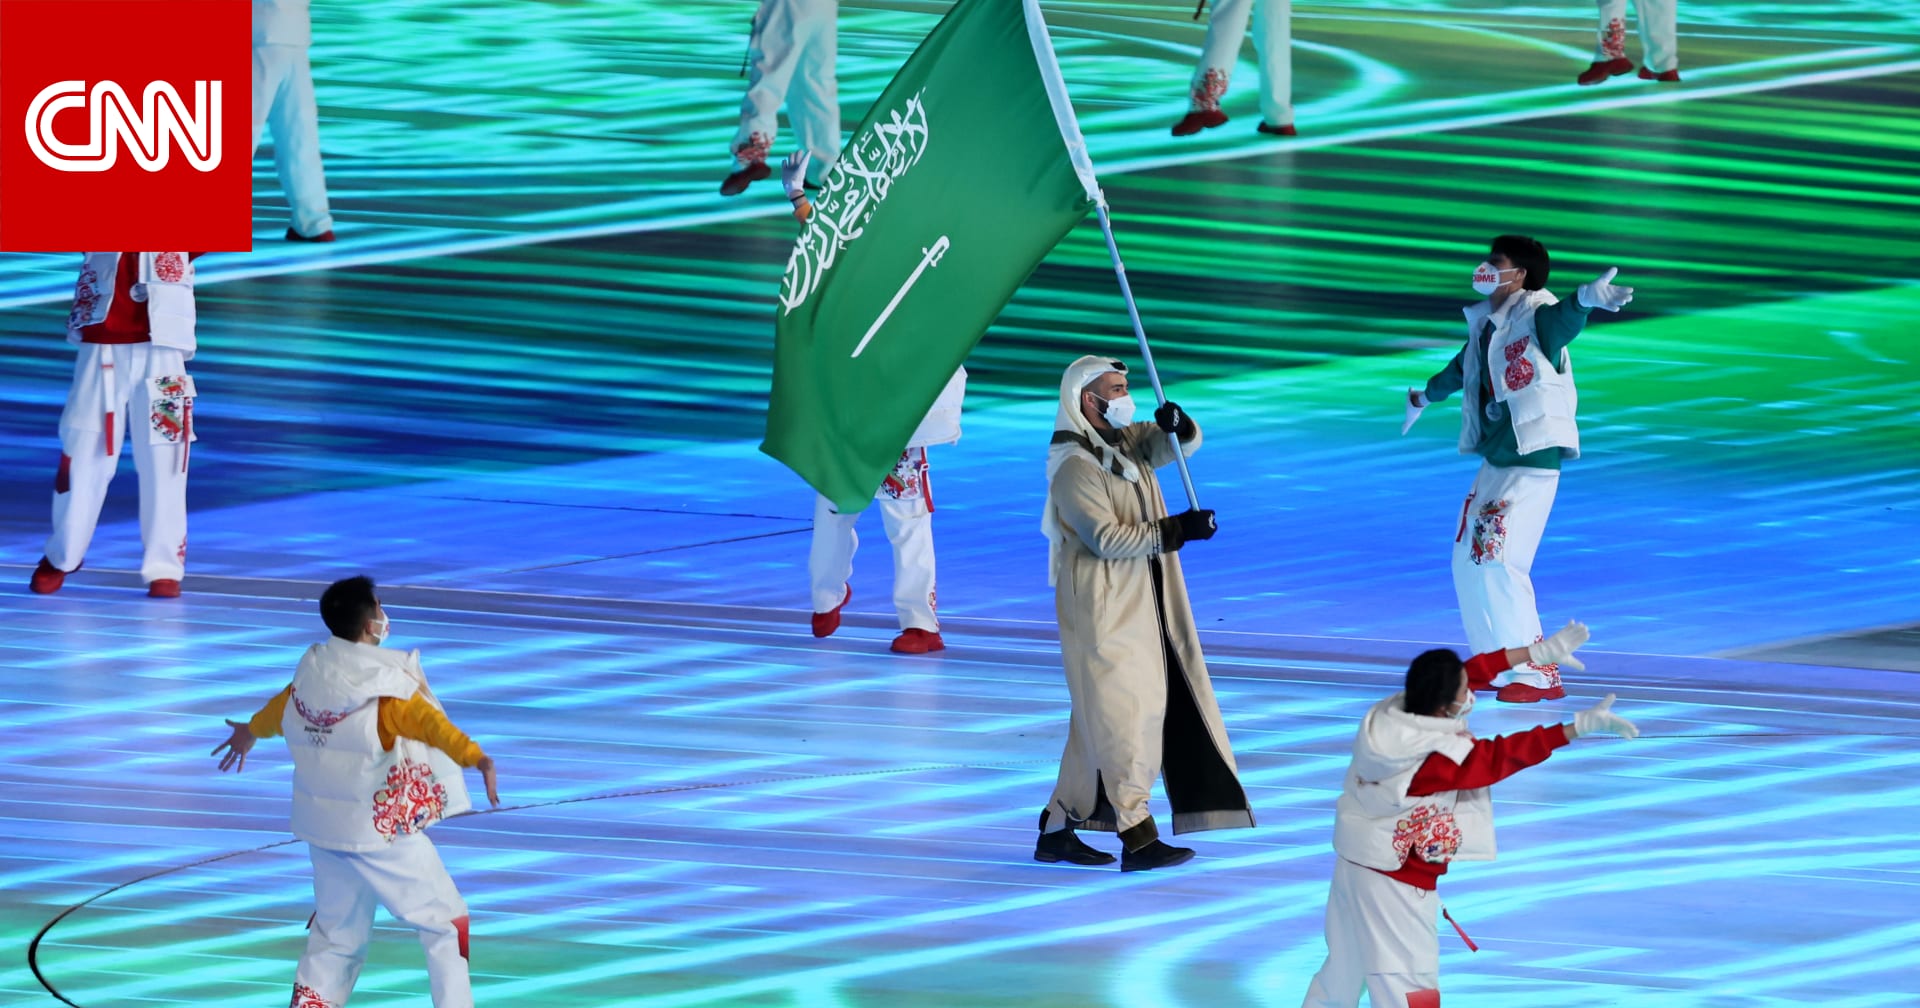 沙特阿拉伯只有一名选手参加冬奥会……他就是法伊克·阿贝迪 (Faiq Abedi)